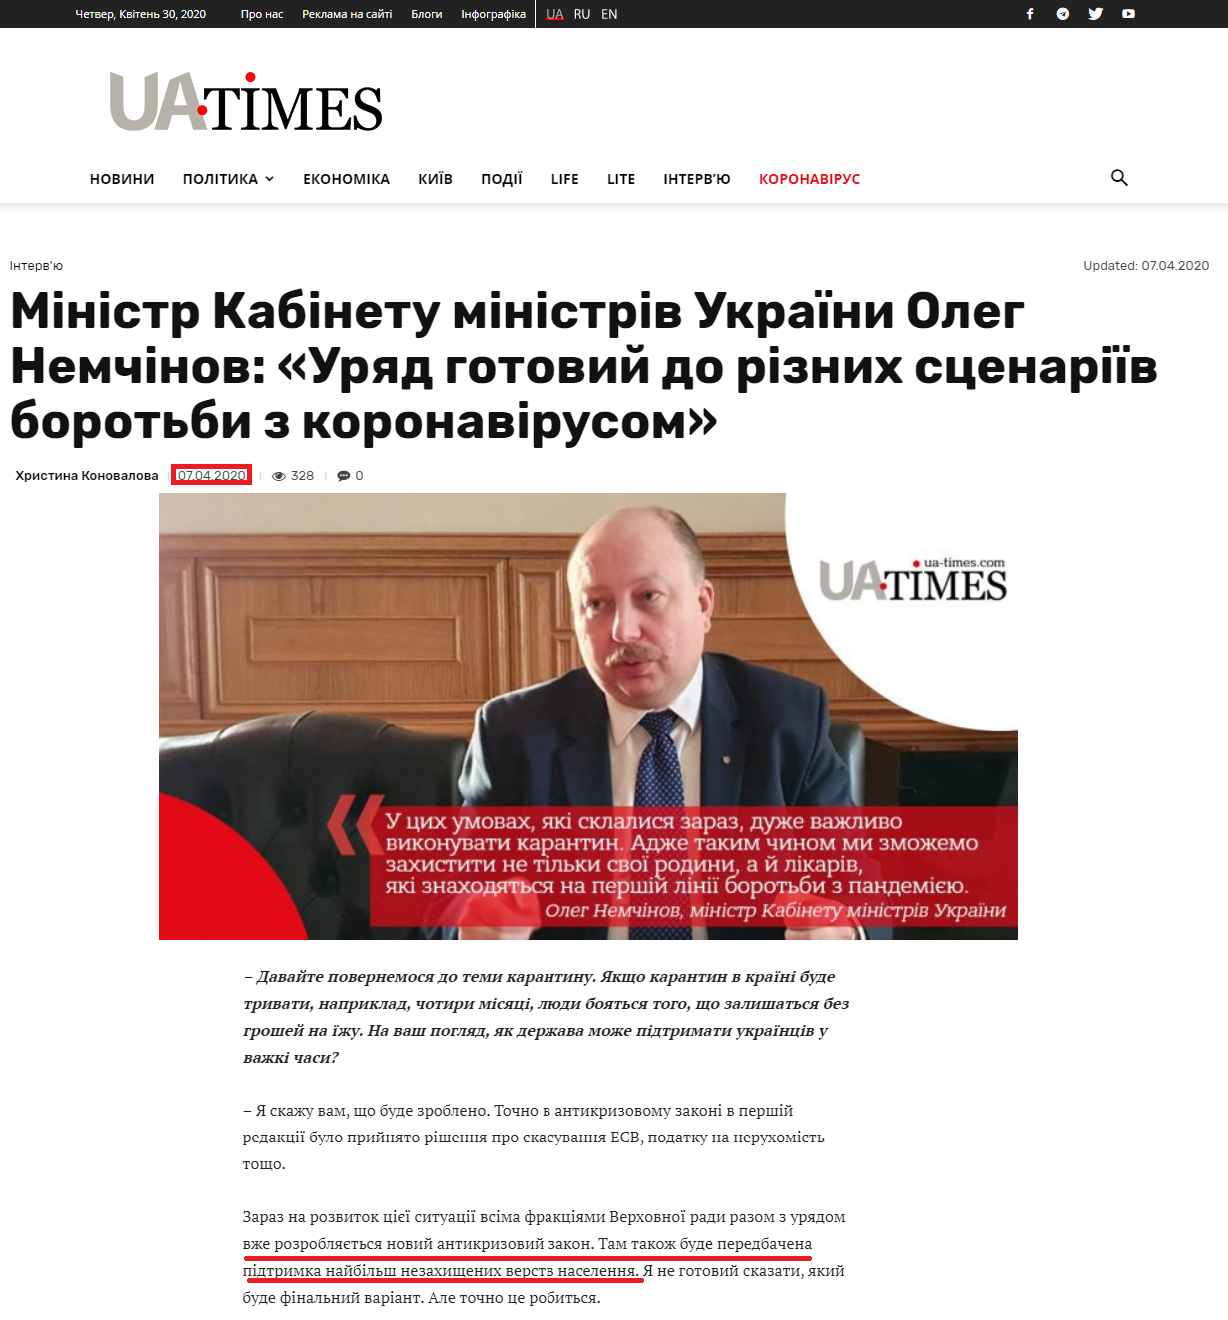 https://ua-times.com/interview-2/ministr-kabinetu-ministriv-ukrayiny-oleg-nemchinov-uryad-gotovyj-do-riznyh-scenariyiv-borotby-z-koronavirusom.html